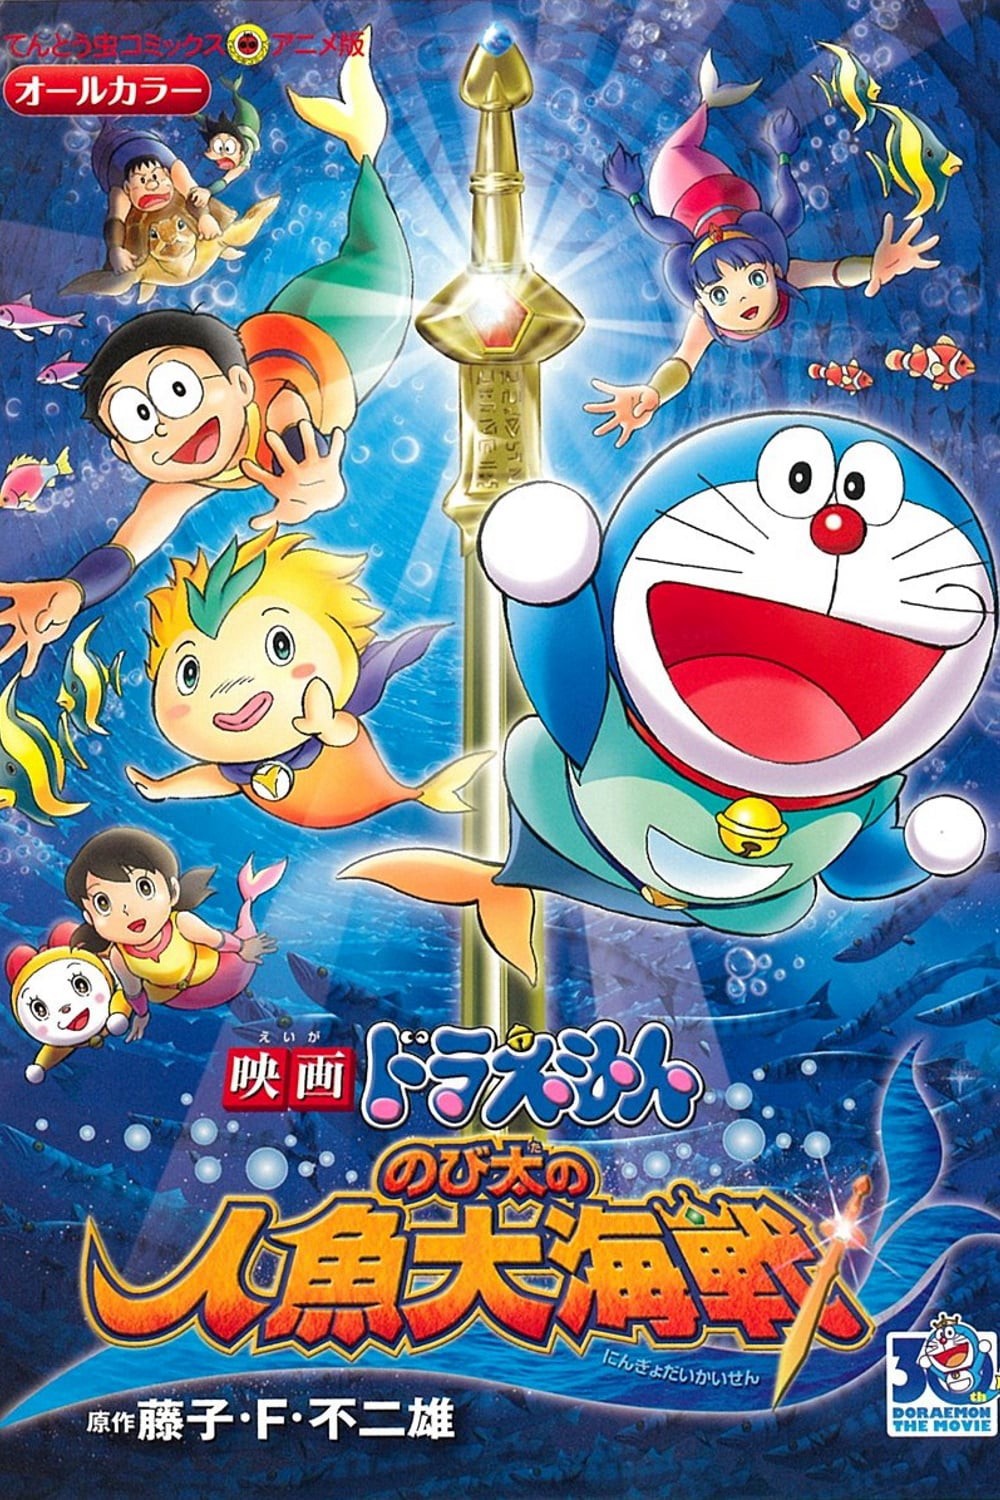 Doraemon: Nobita và Cuộc Đại Thủy Chiến Ở Xứ Sở Người Cá - Doraemon: Nobita và Cuộc Đại Thủy Chiến Ở Xứ Sở Người Cá (2010)